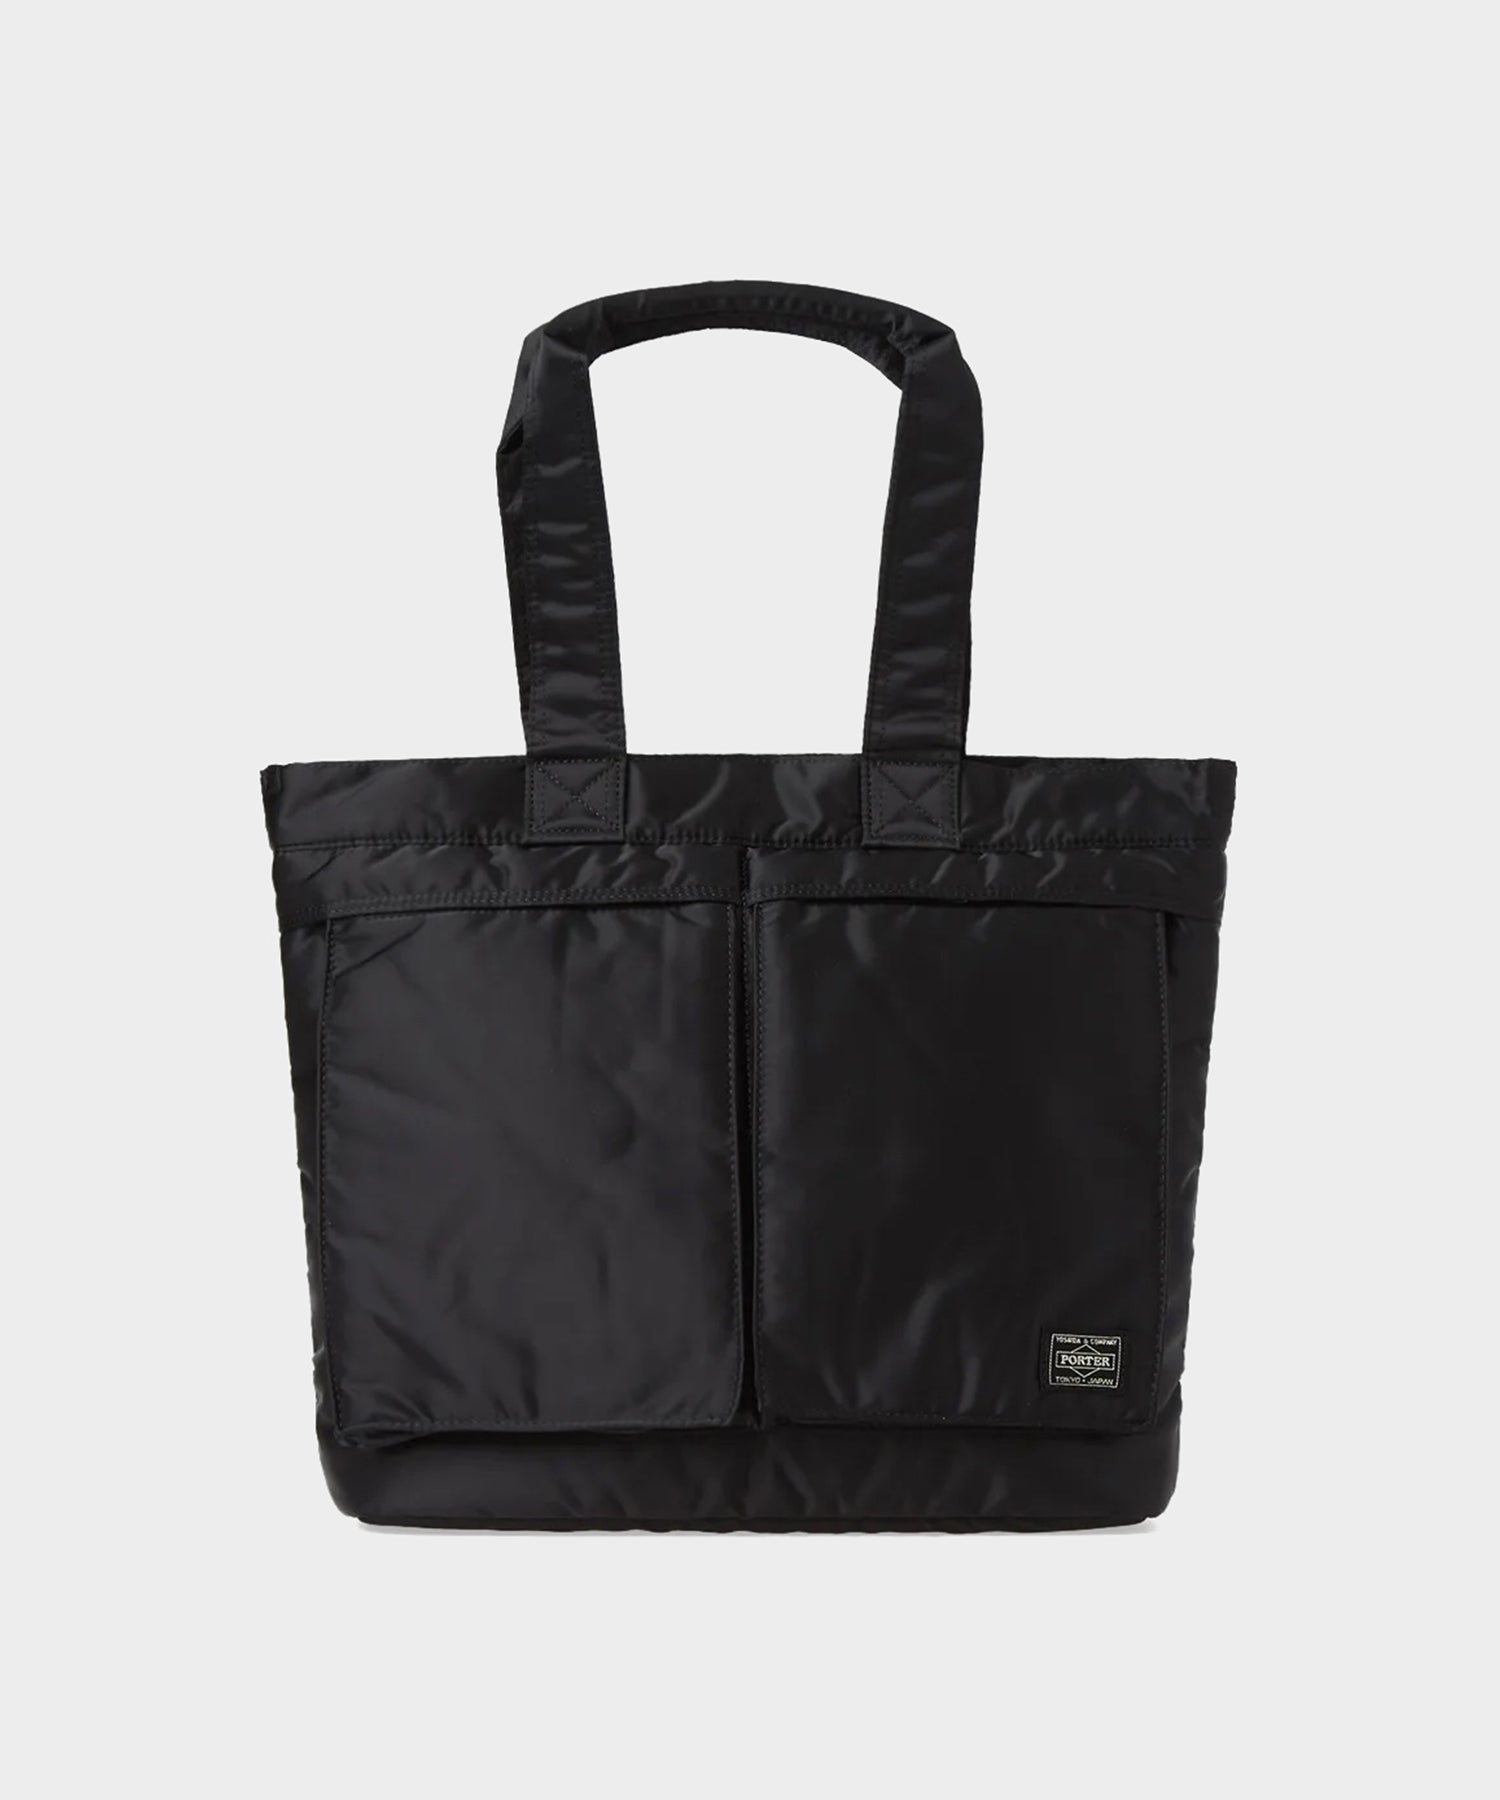 Porter-Yoshida & Co. Tanker Tote Bag in Black